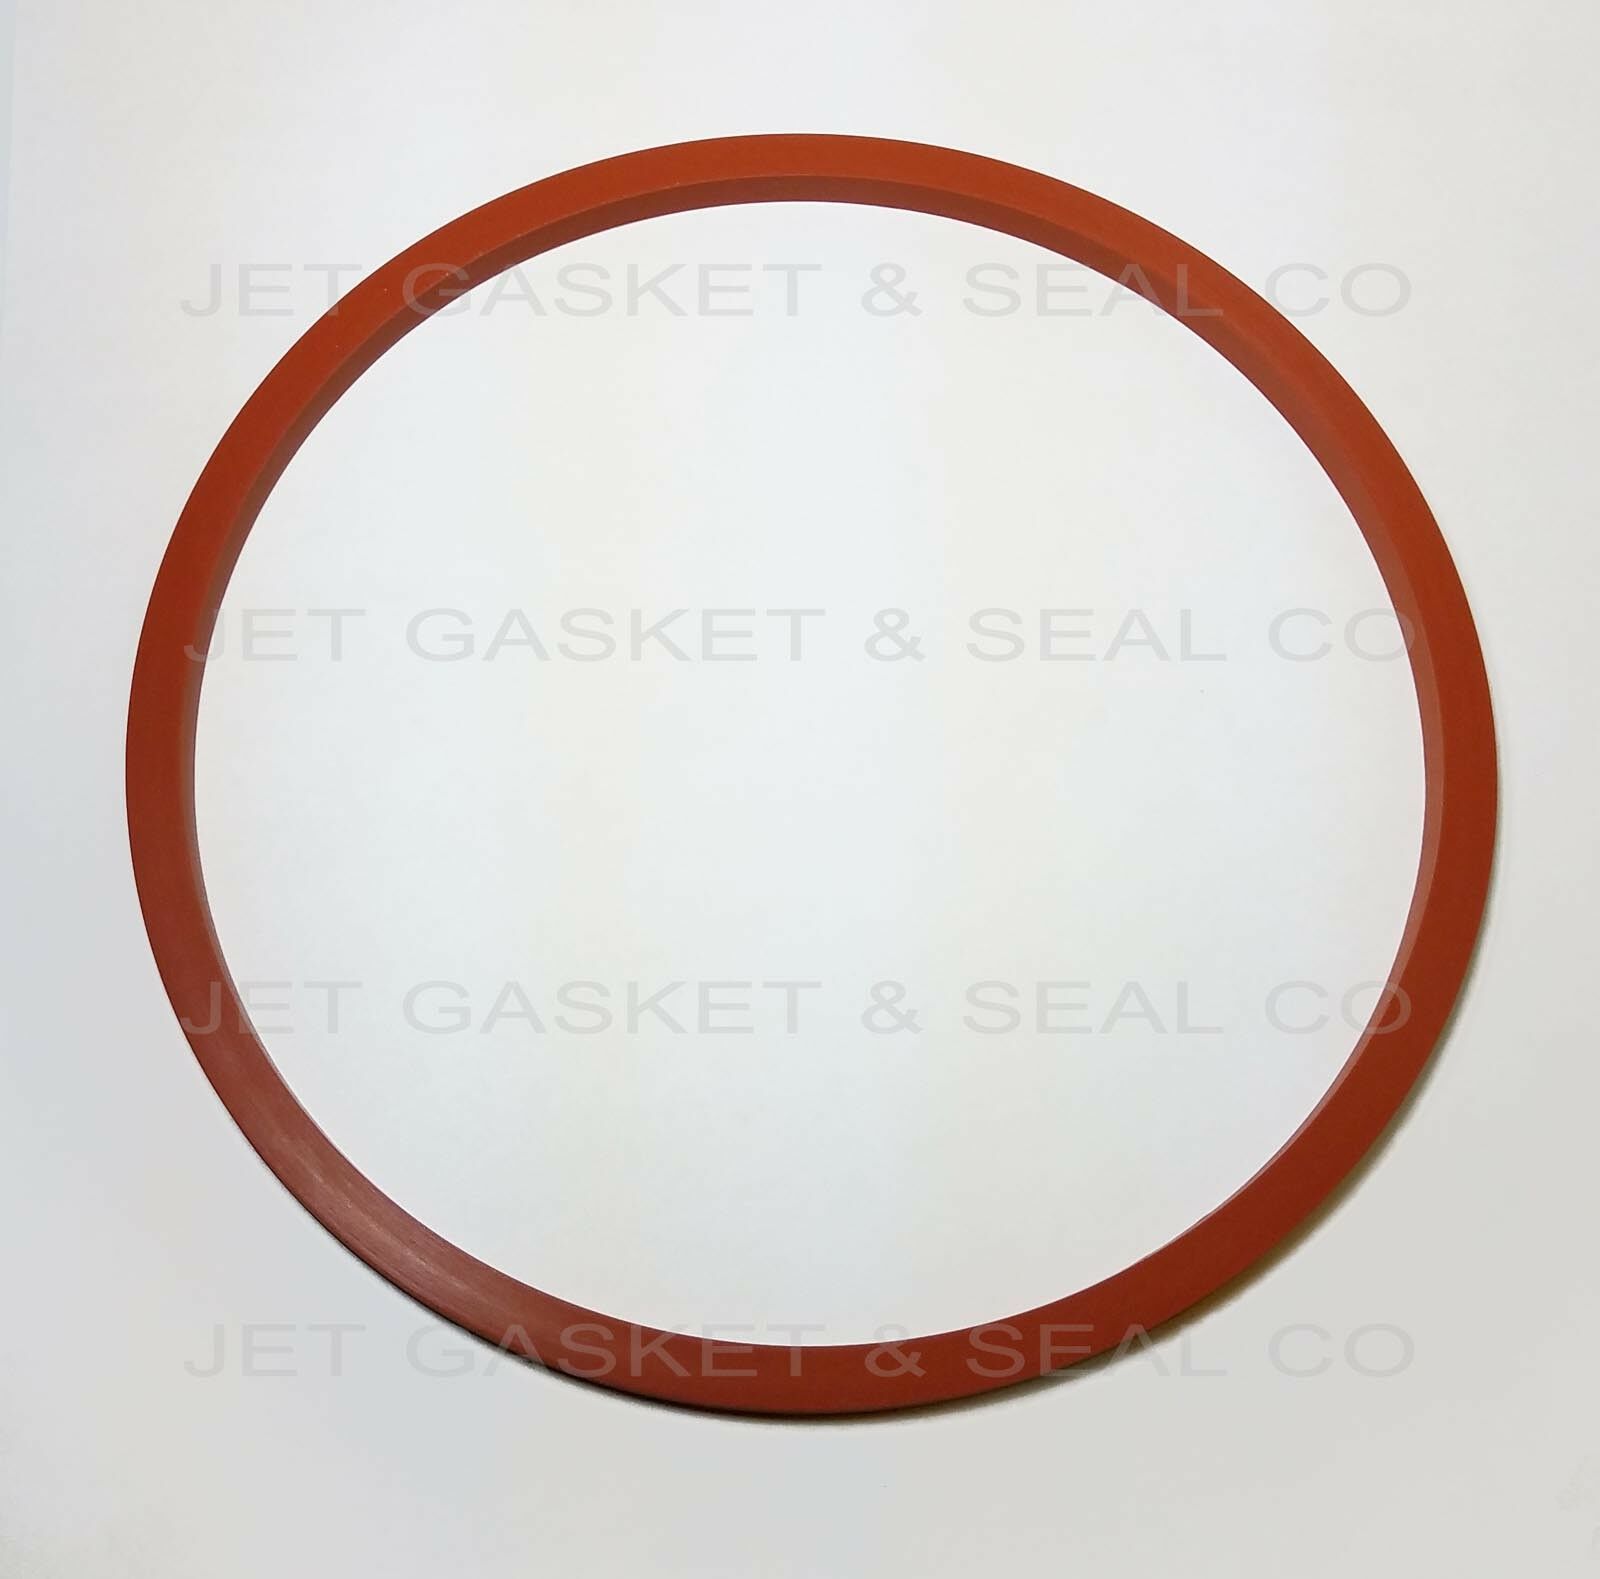 Jet Gasket Brand Door Seal Gasket Replacement For Tuttnauer Ez10 / 2540